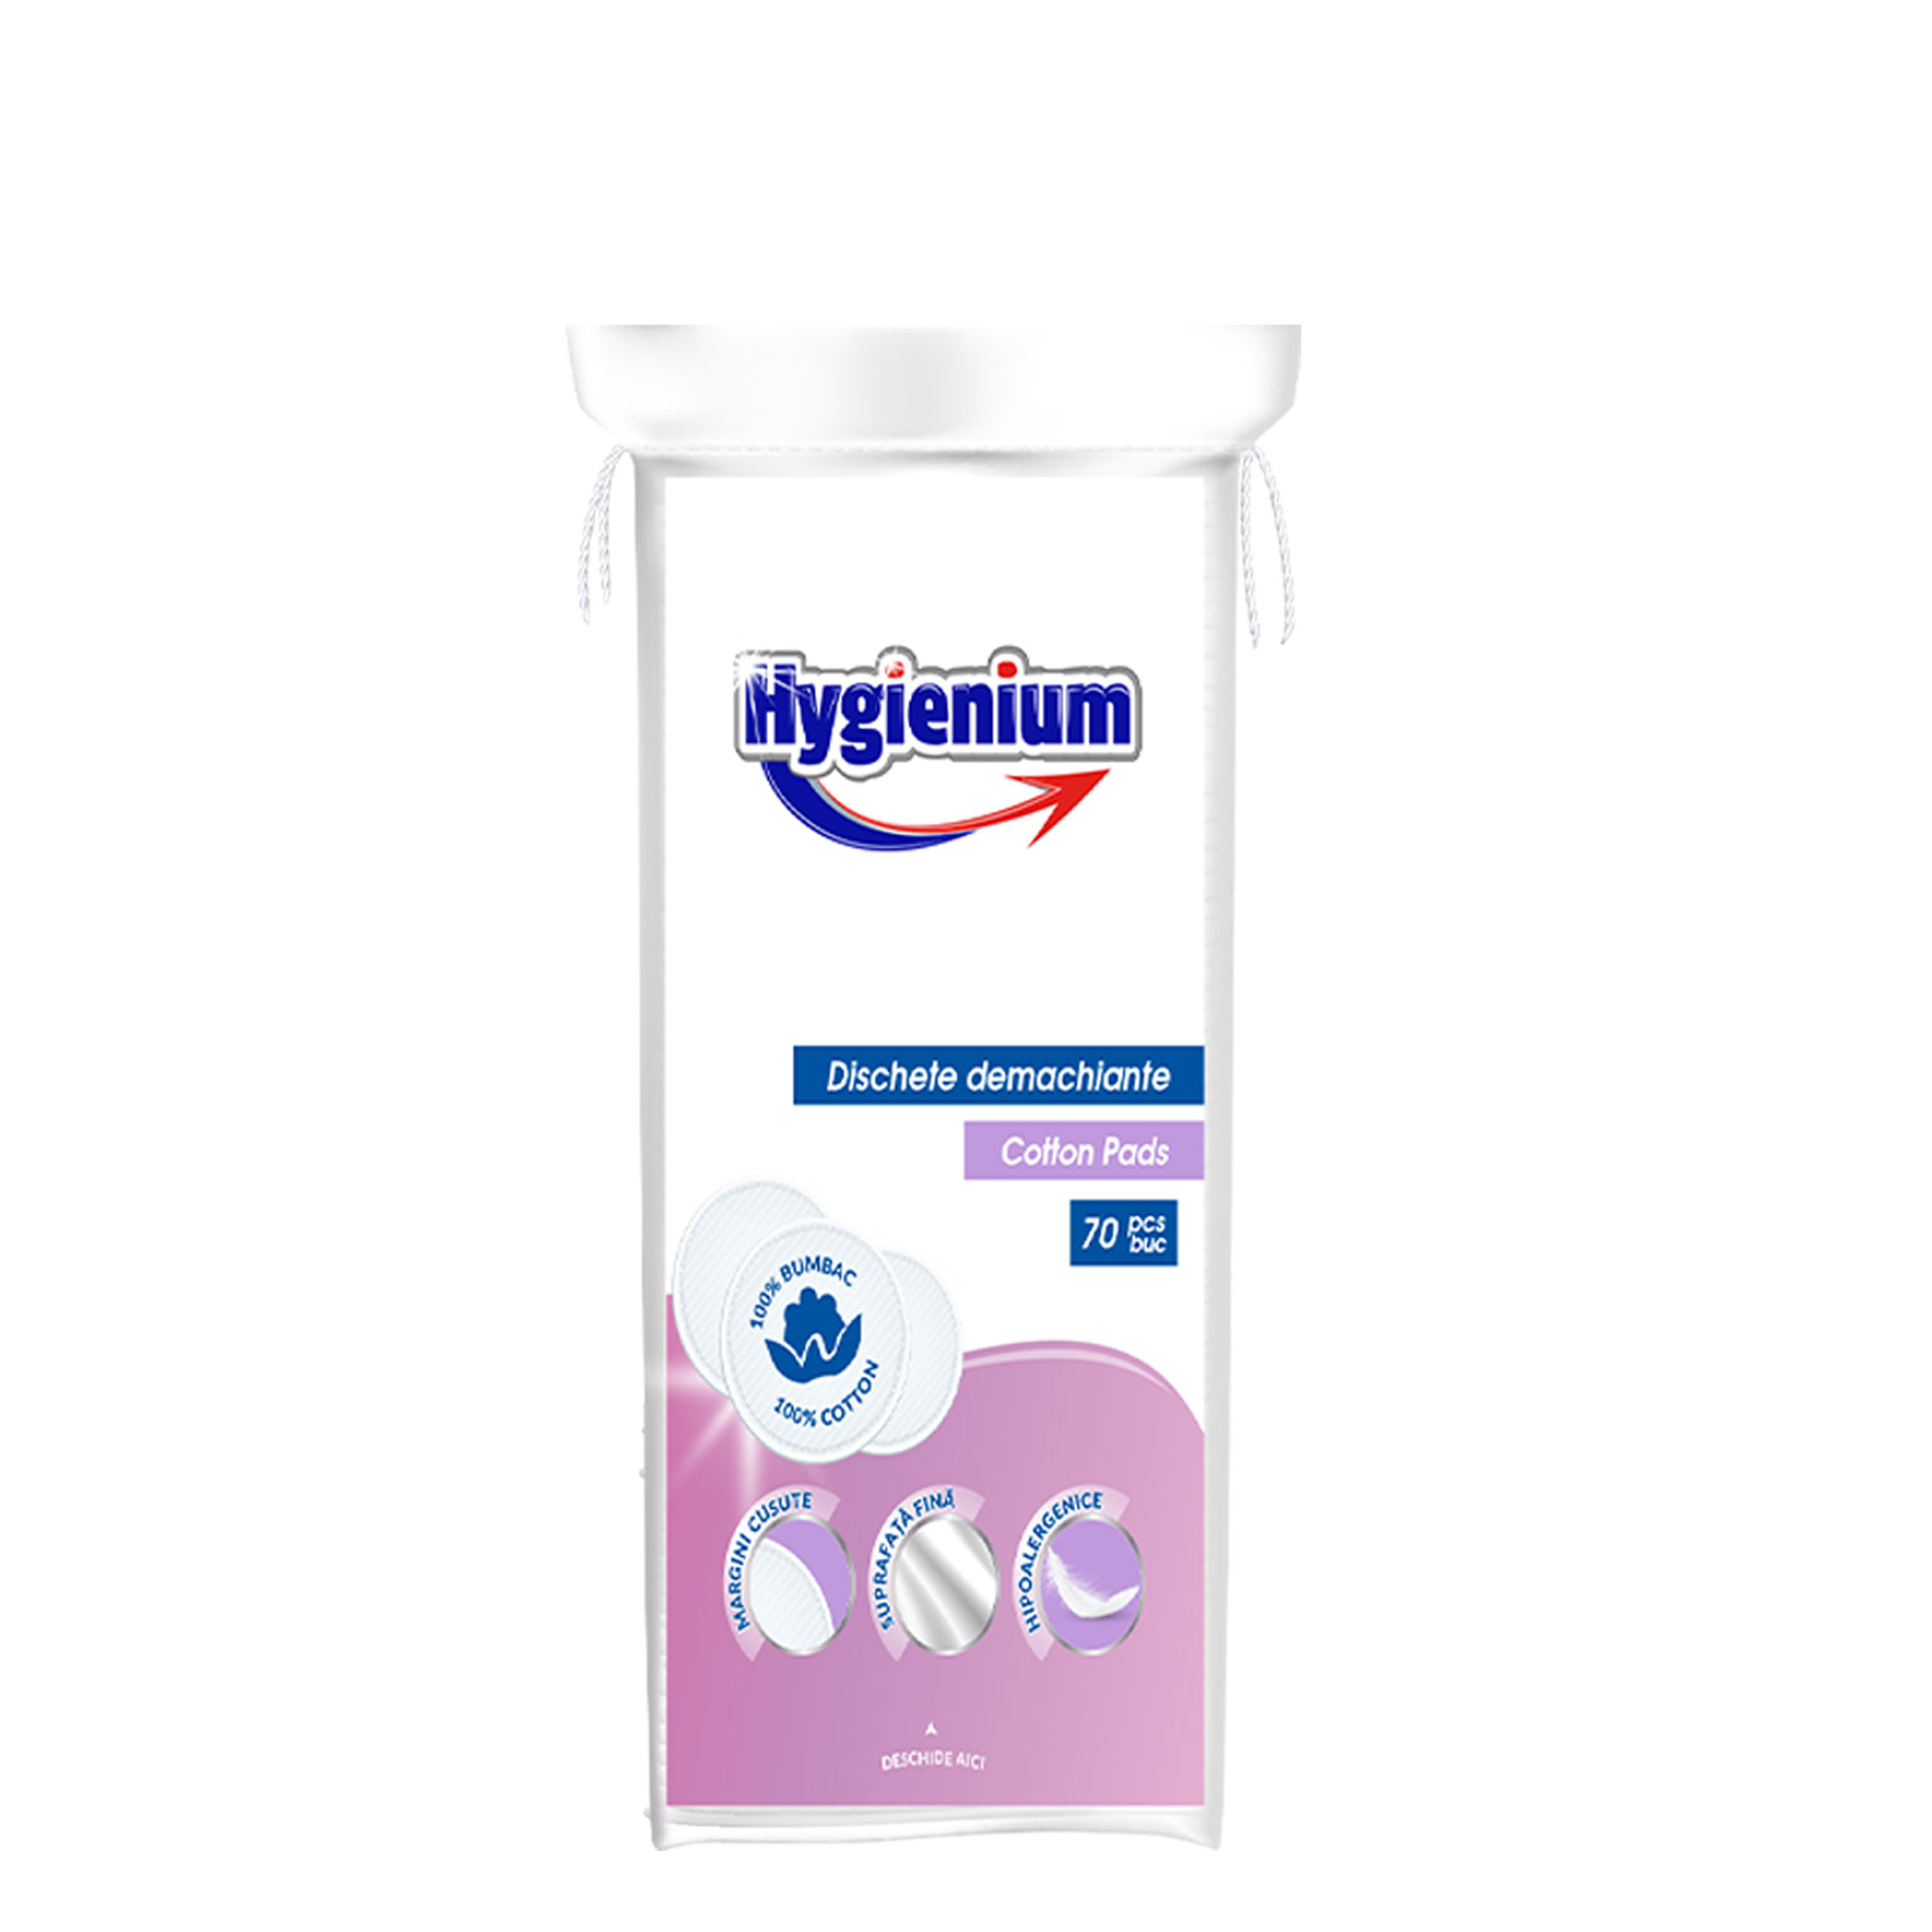 Hygienium Dischete Demachiante 70 pcs